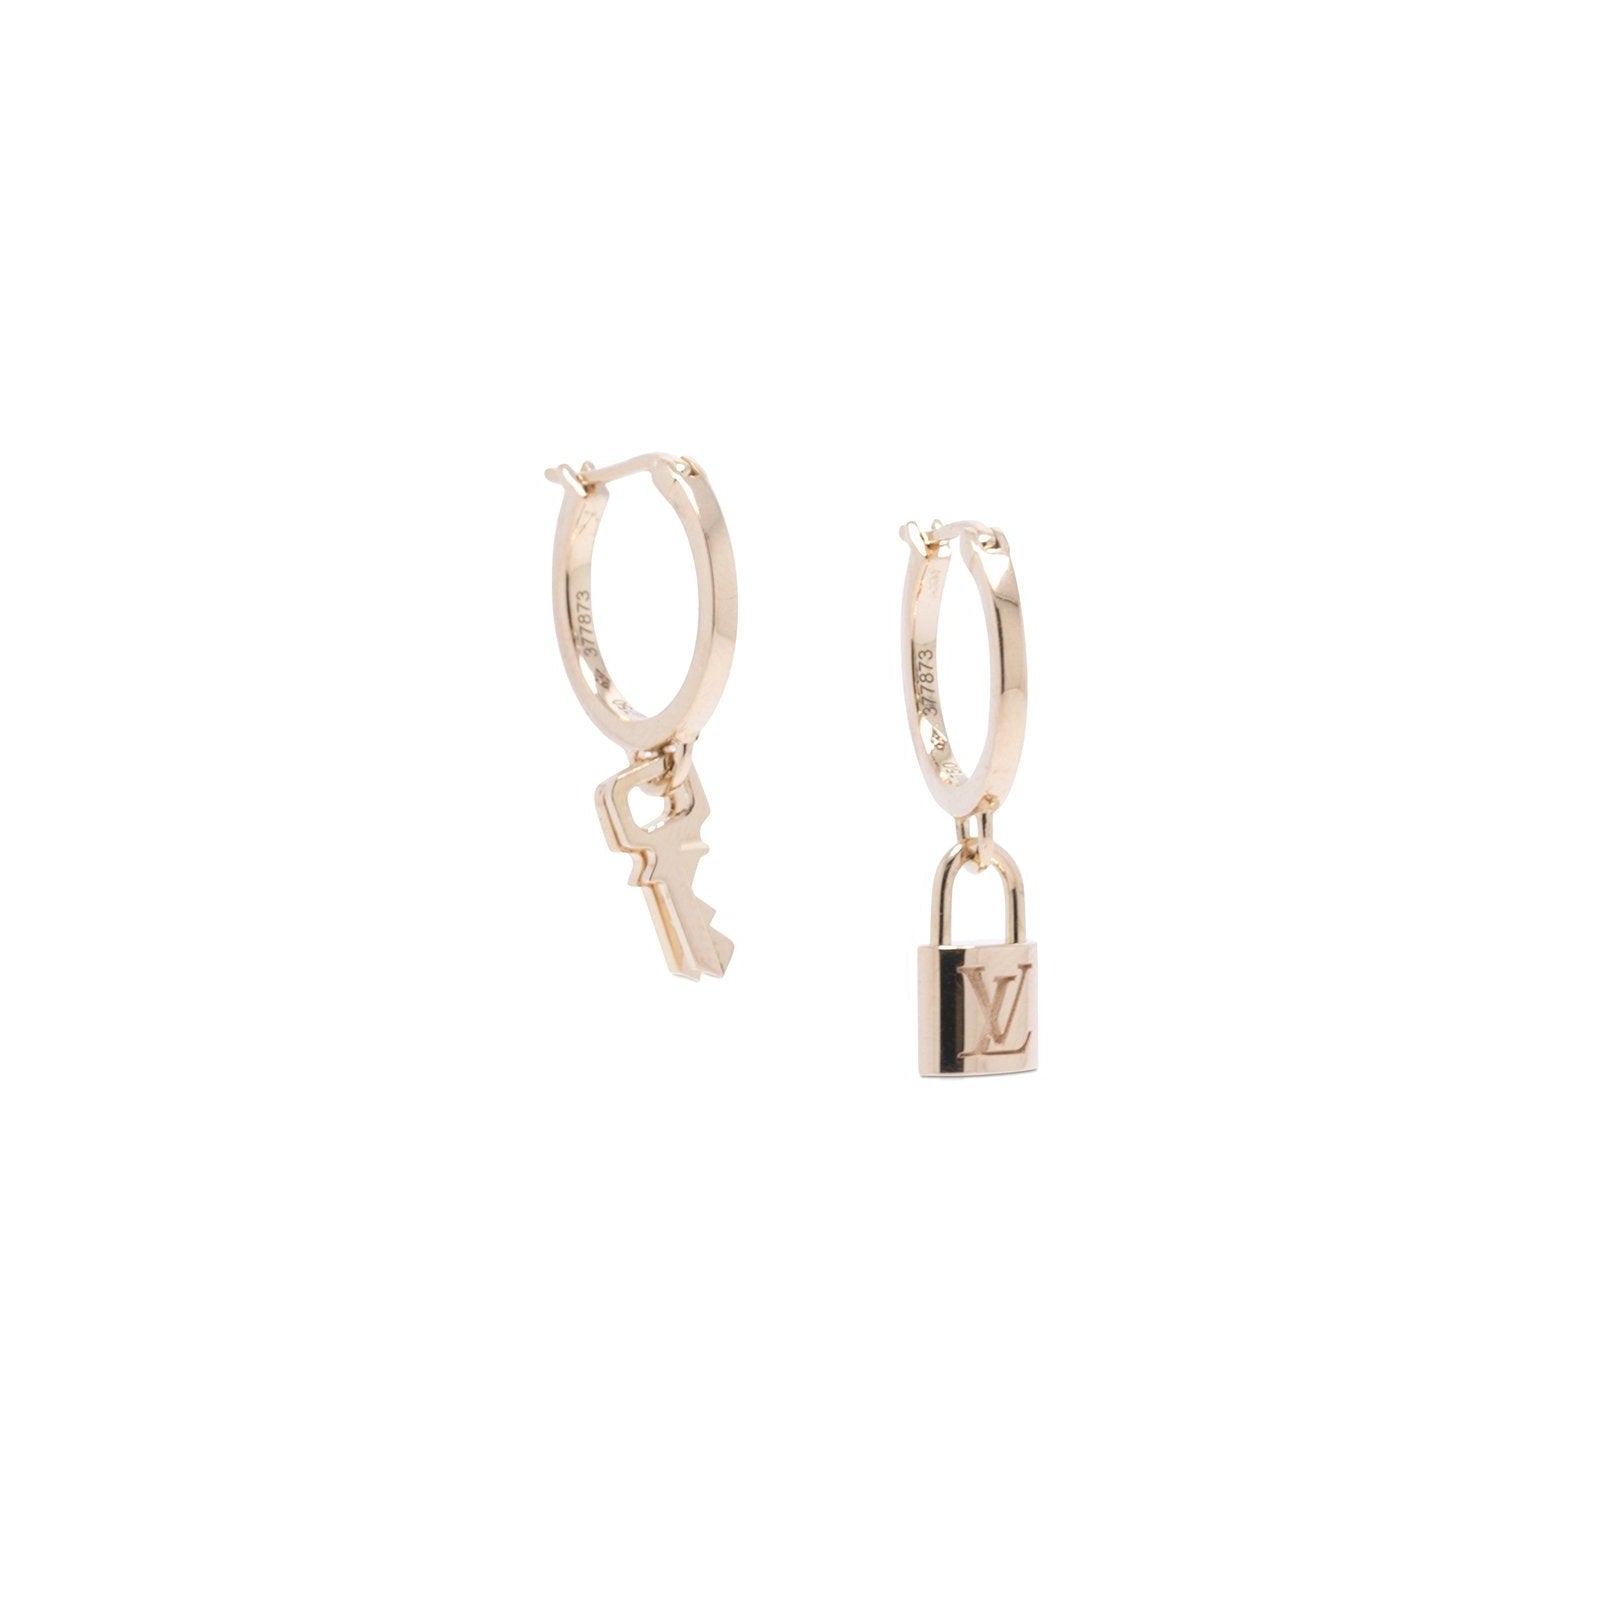 Punk Lock Key Pendant Earrings 925 Sterling Silver Ear Needle Padlock Hoop  Earrings for Women Fashion Couple Jewelry Gifts - AliExpress